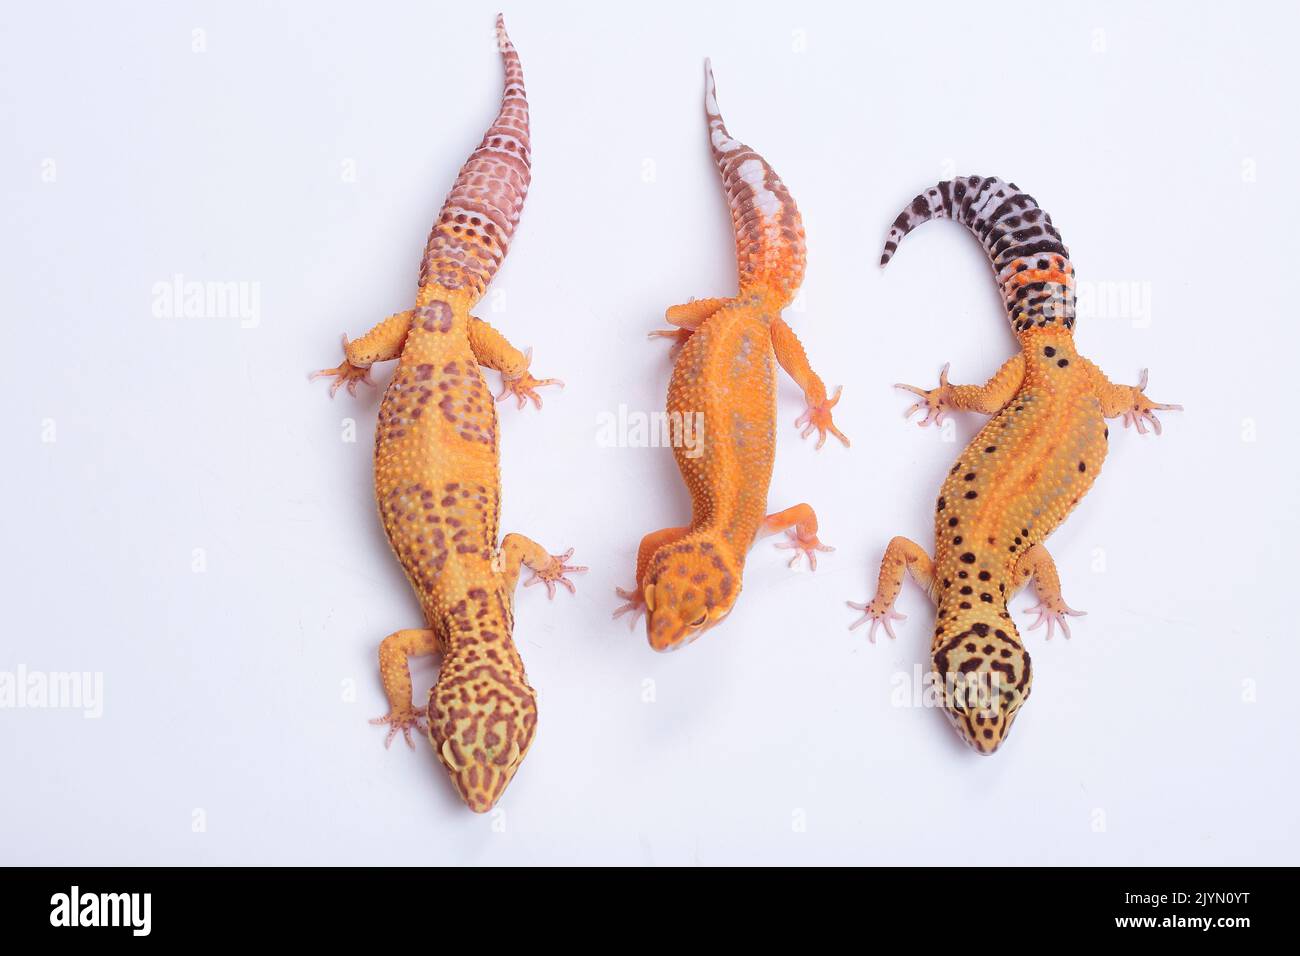 Common leopard gecko (Eublepharis macularius) three geckos on white background Stock Photo